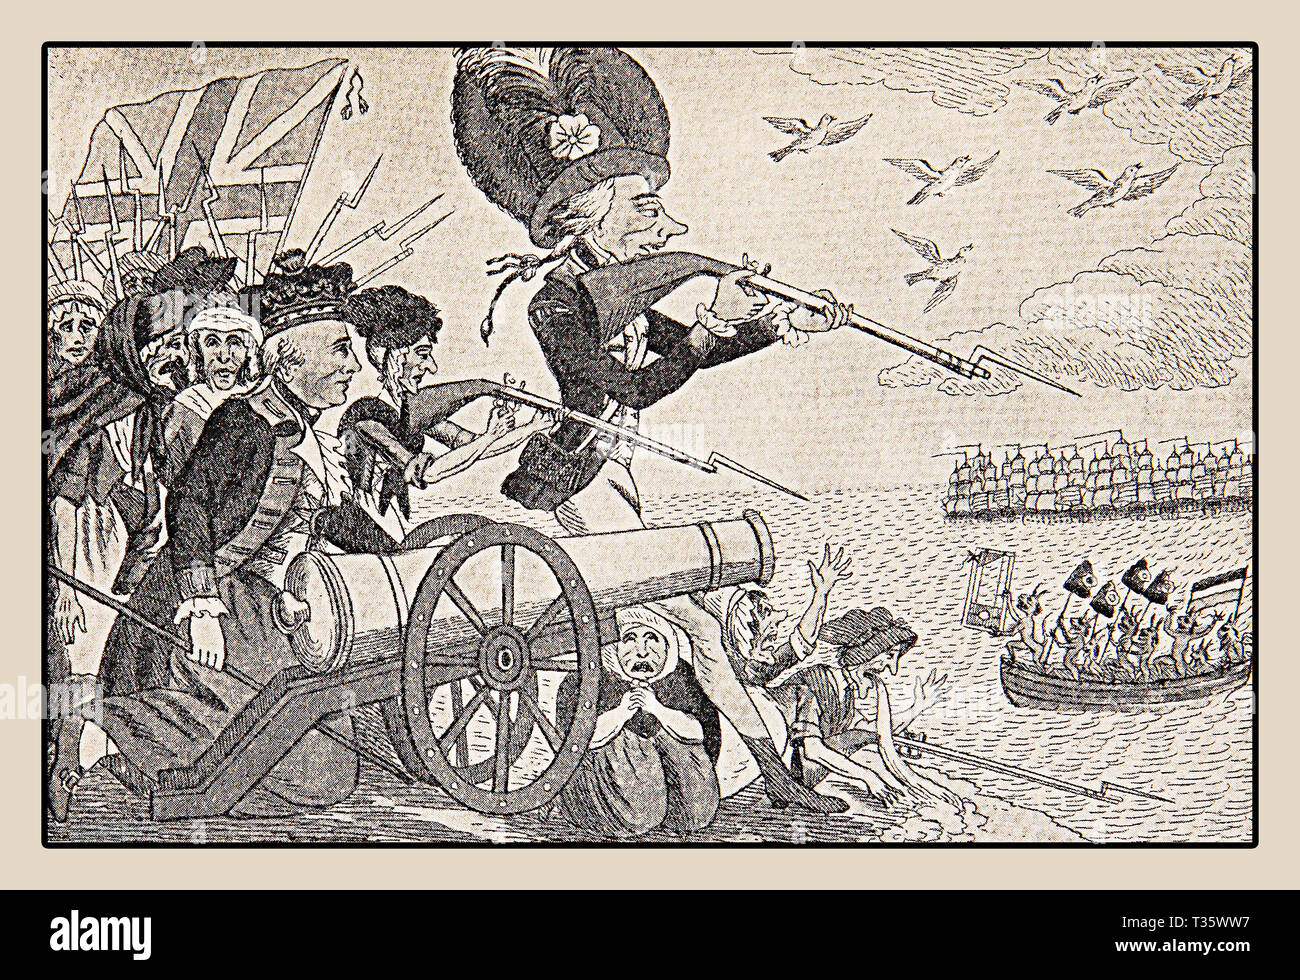 Englisch Kräfte warten die französische Invasion durch Meer während der maritimen Krieg von 1806-1815, die mit der Niederlage Napoleons in der Schlacht bei Waterloo endete. Stockfoto